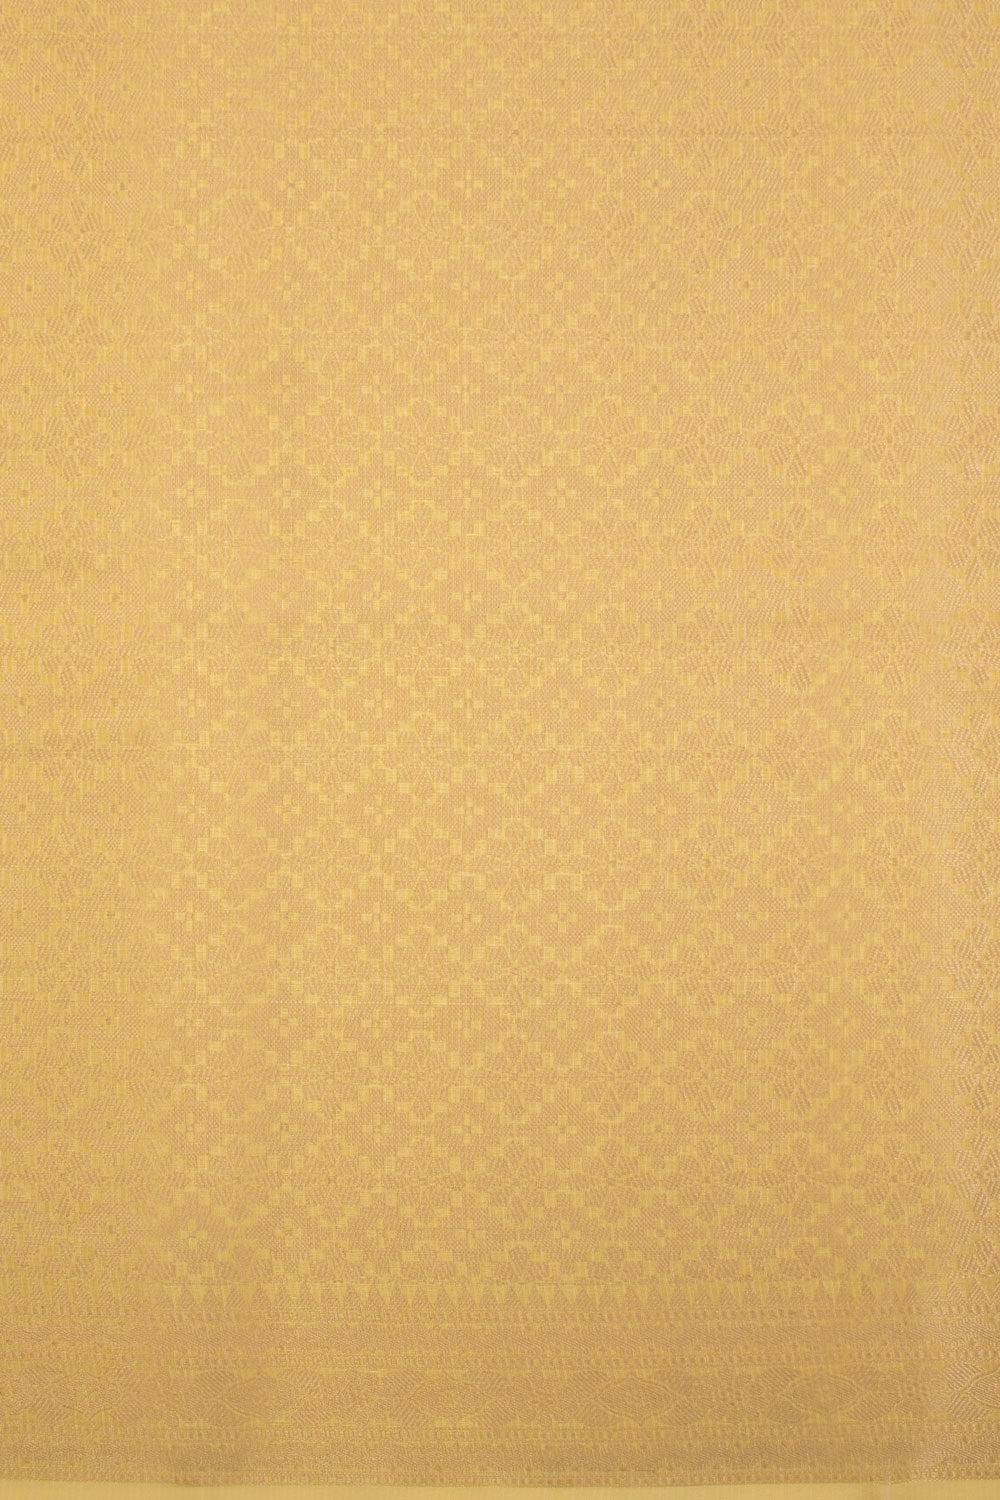 Tan Yellow Handloom Banarasi Silk Cotton Saree 10070502